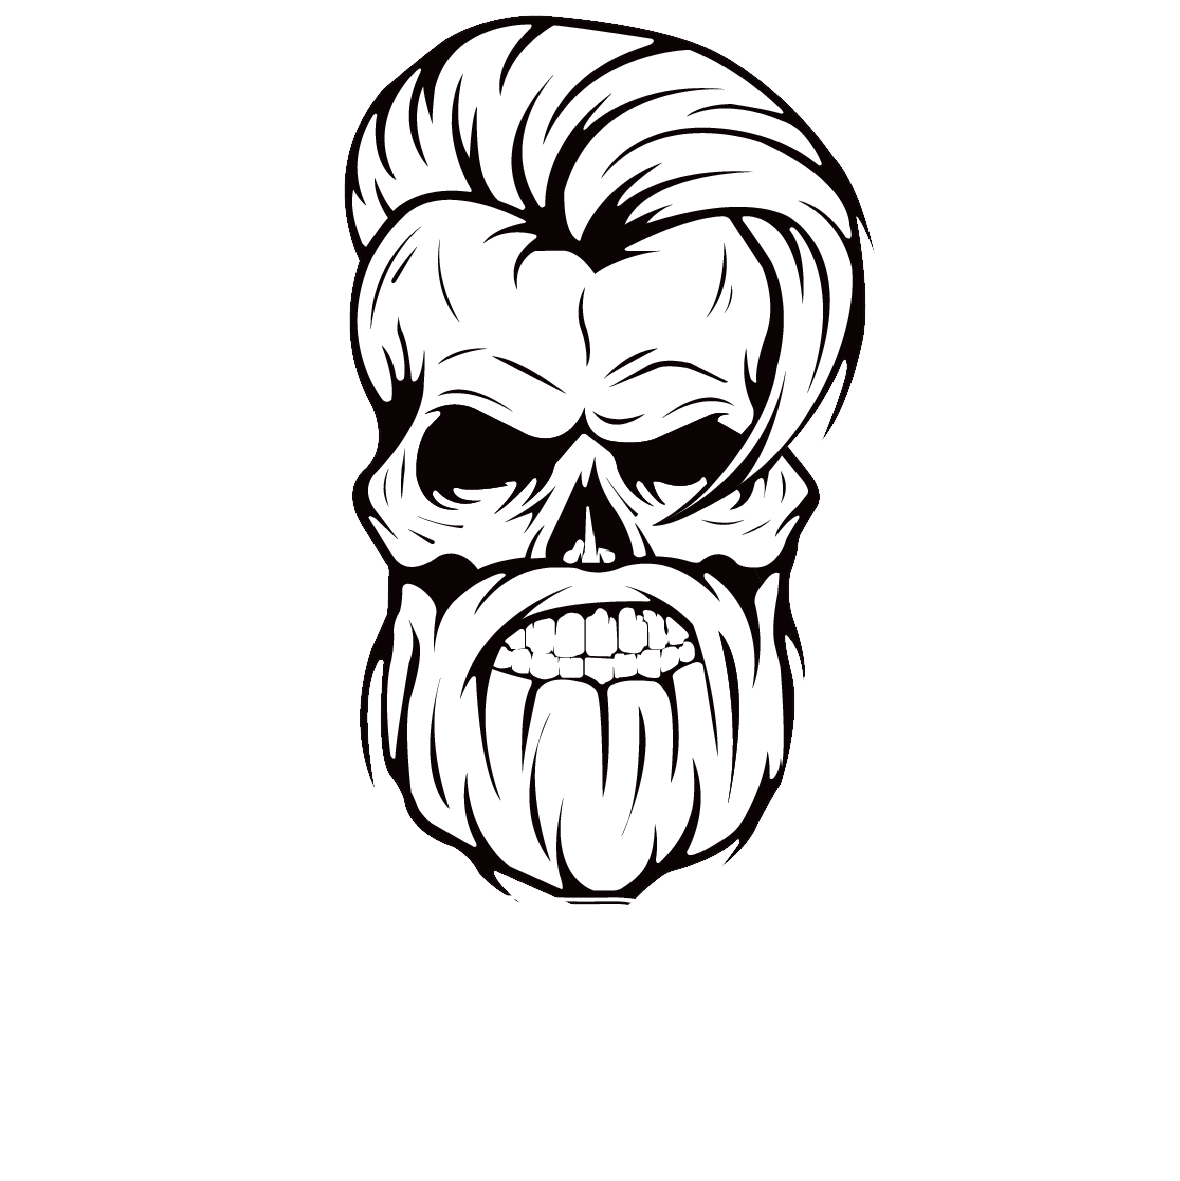 Bandido Ireland